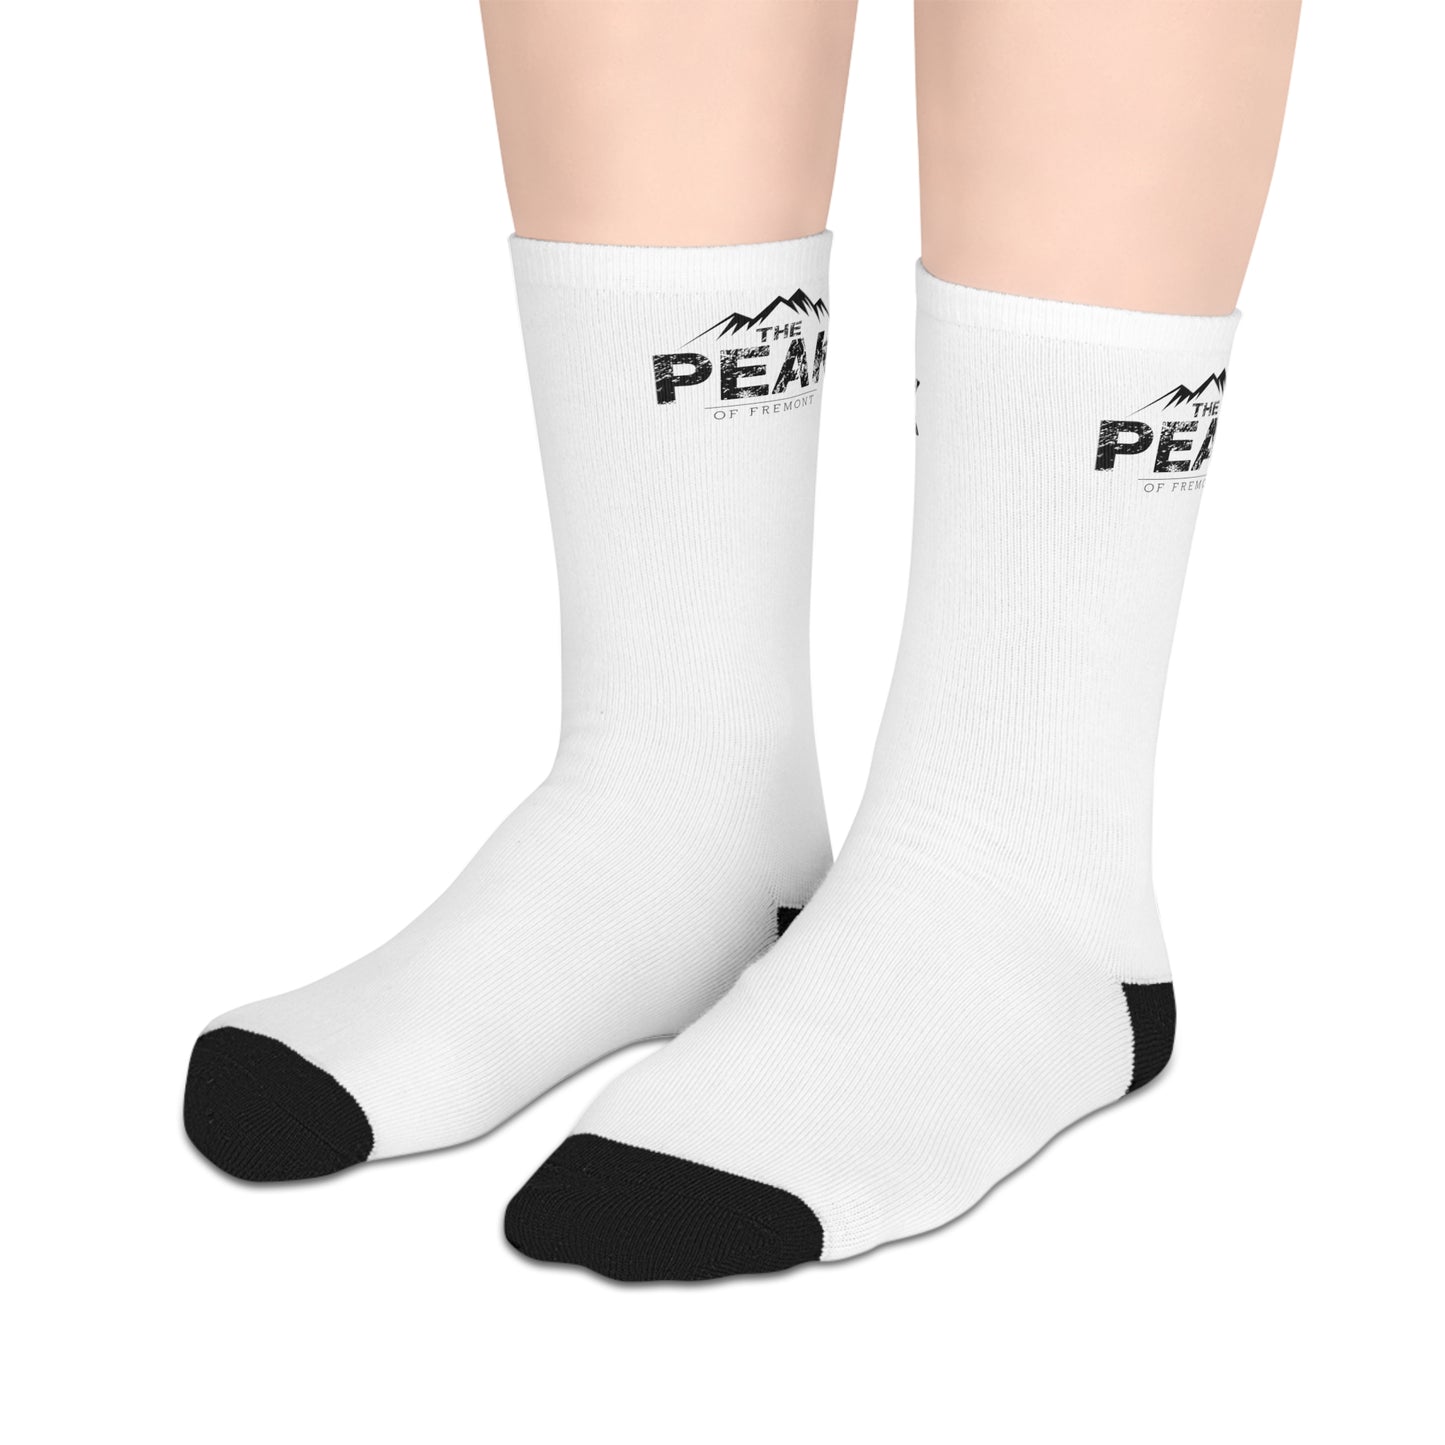 Classic Peak Socks - Mid-length